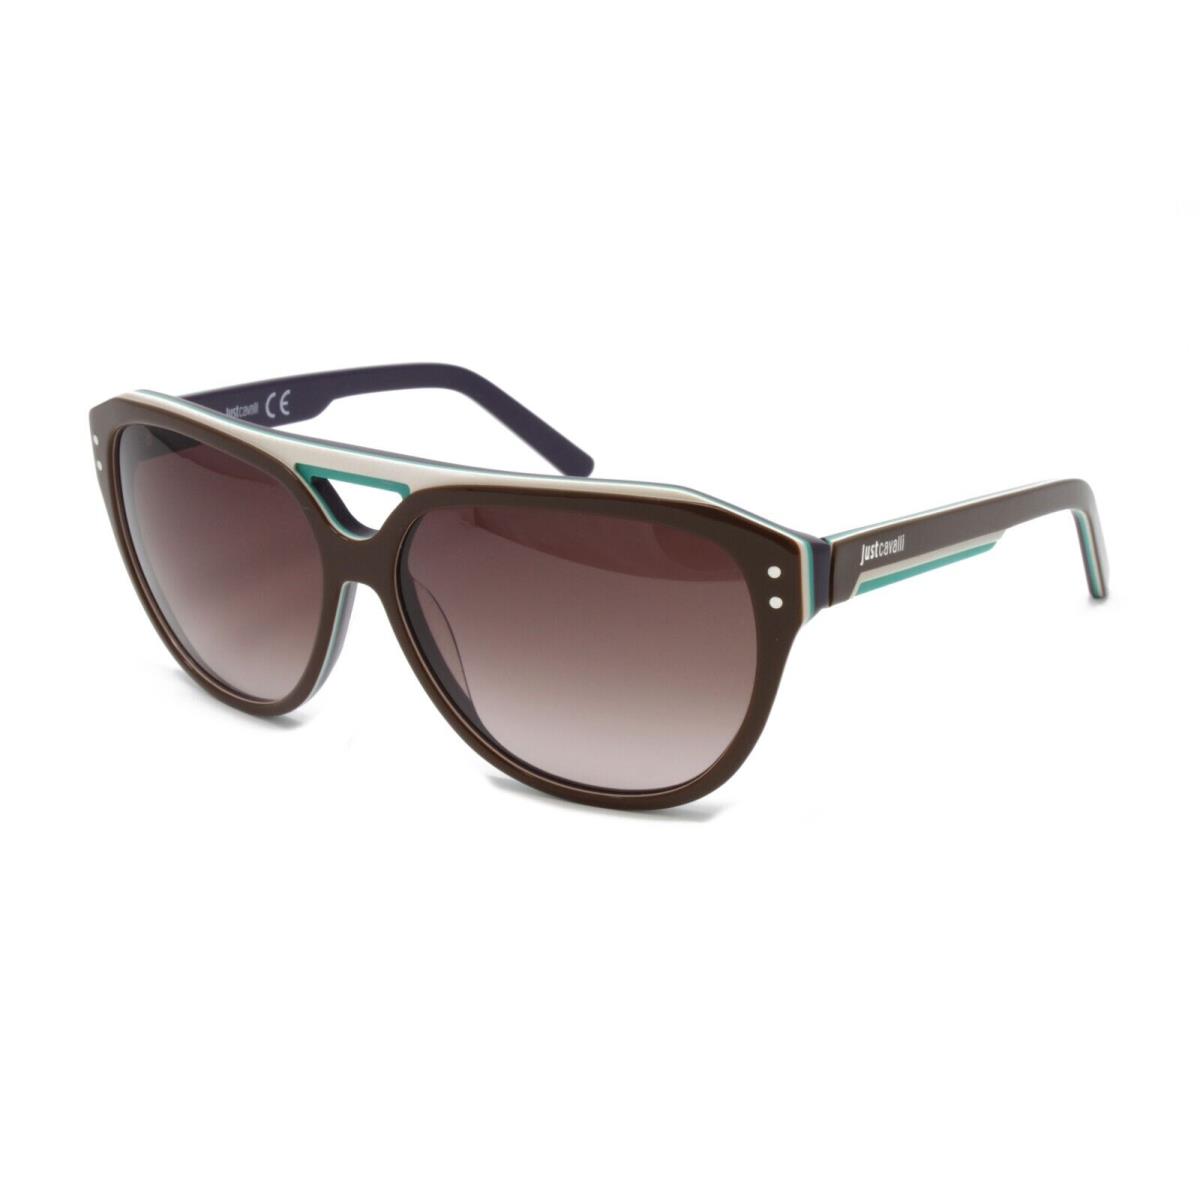 Just Cavalli Sunglasses Unisex Square JC505S 50F Brown/cream/turquoise 58mm